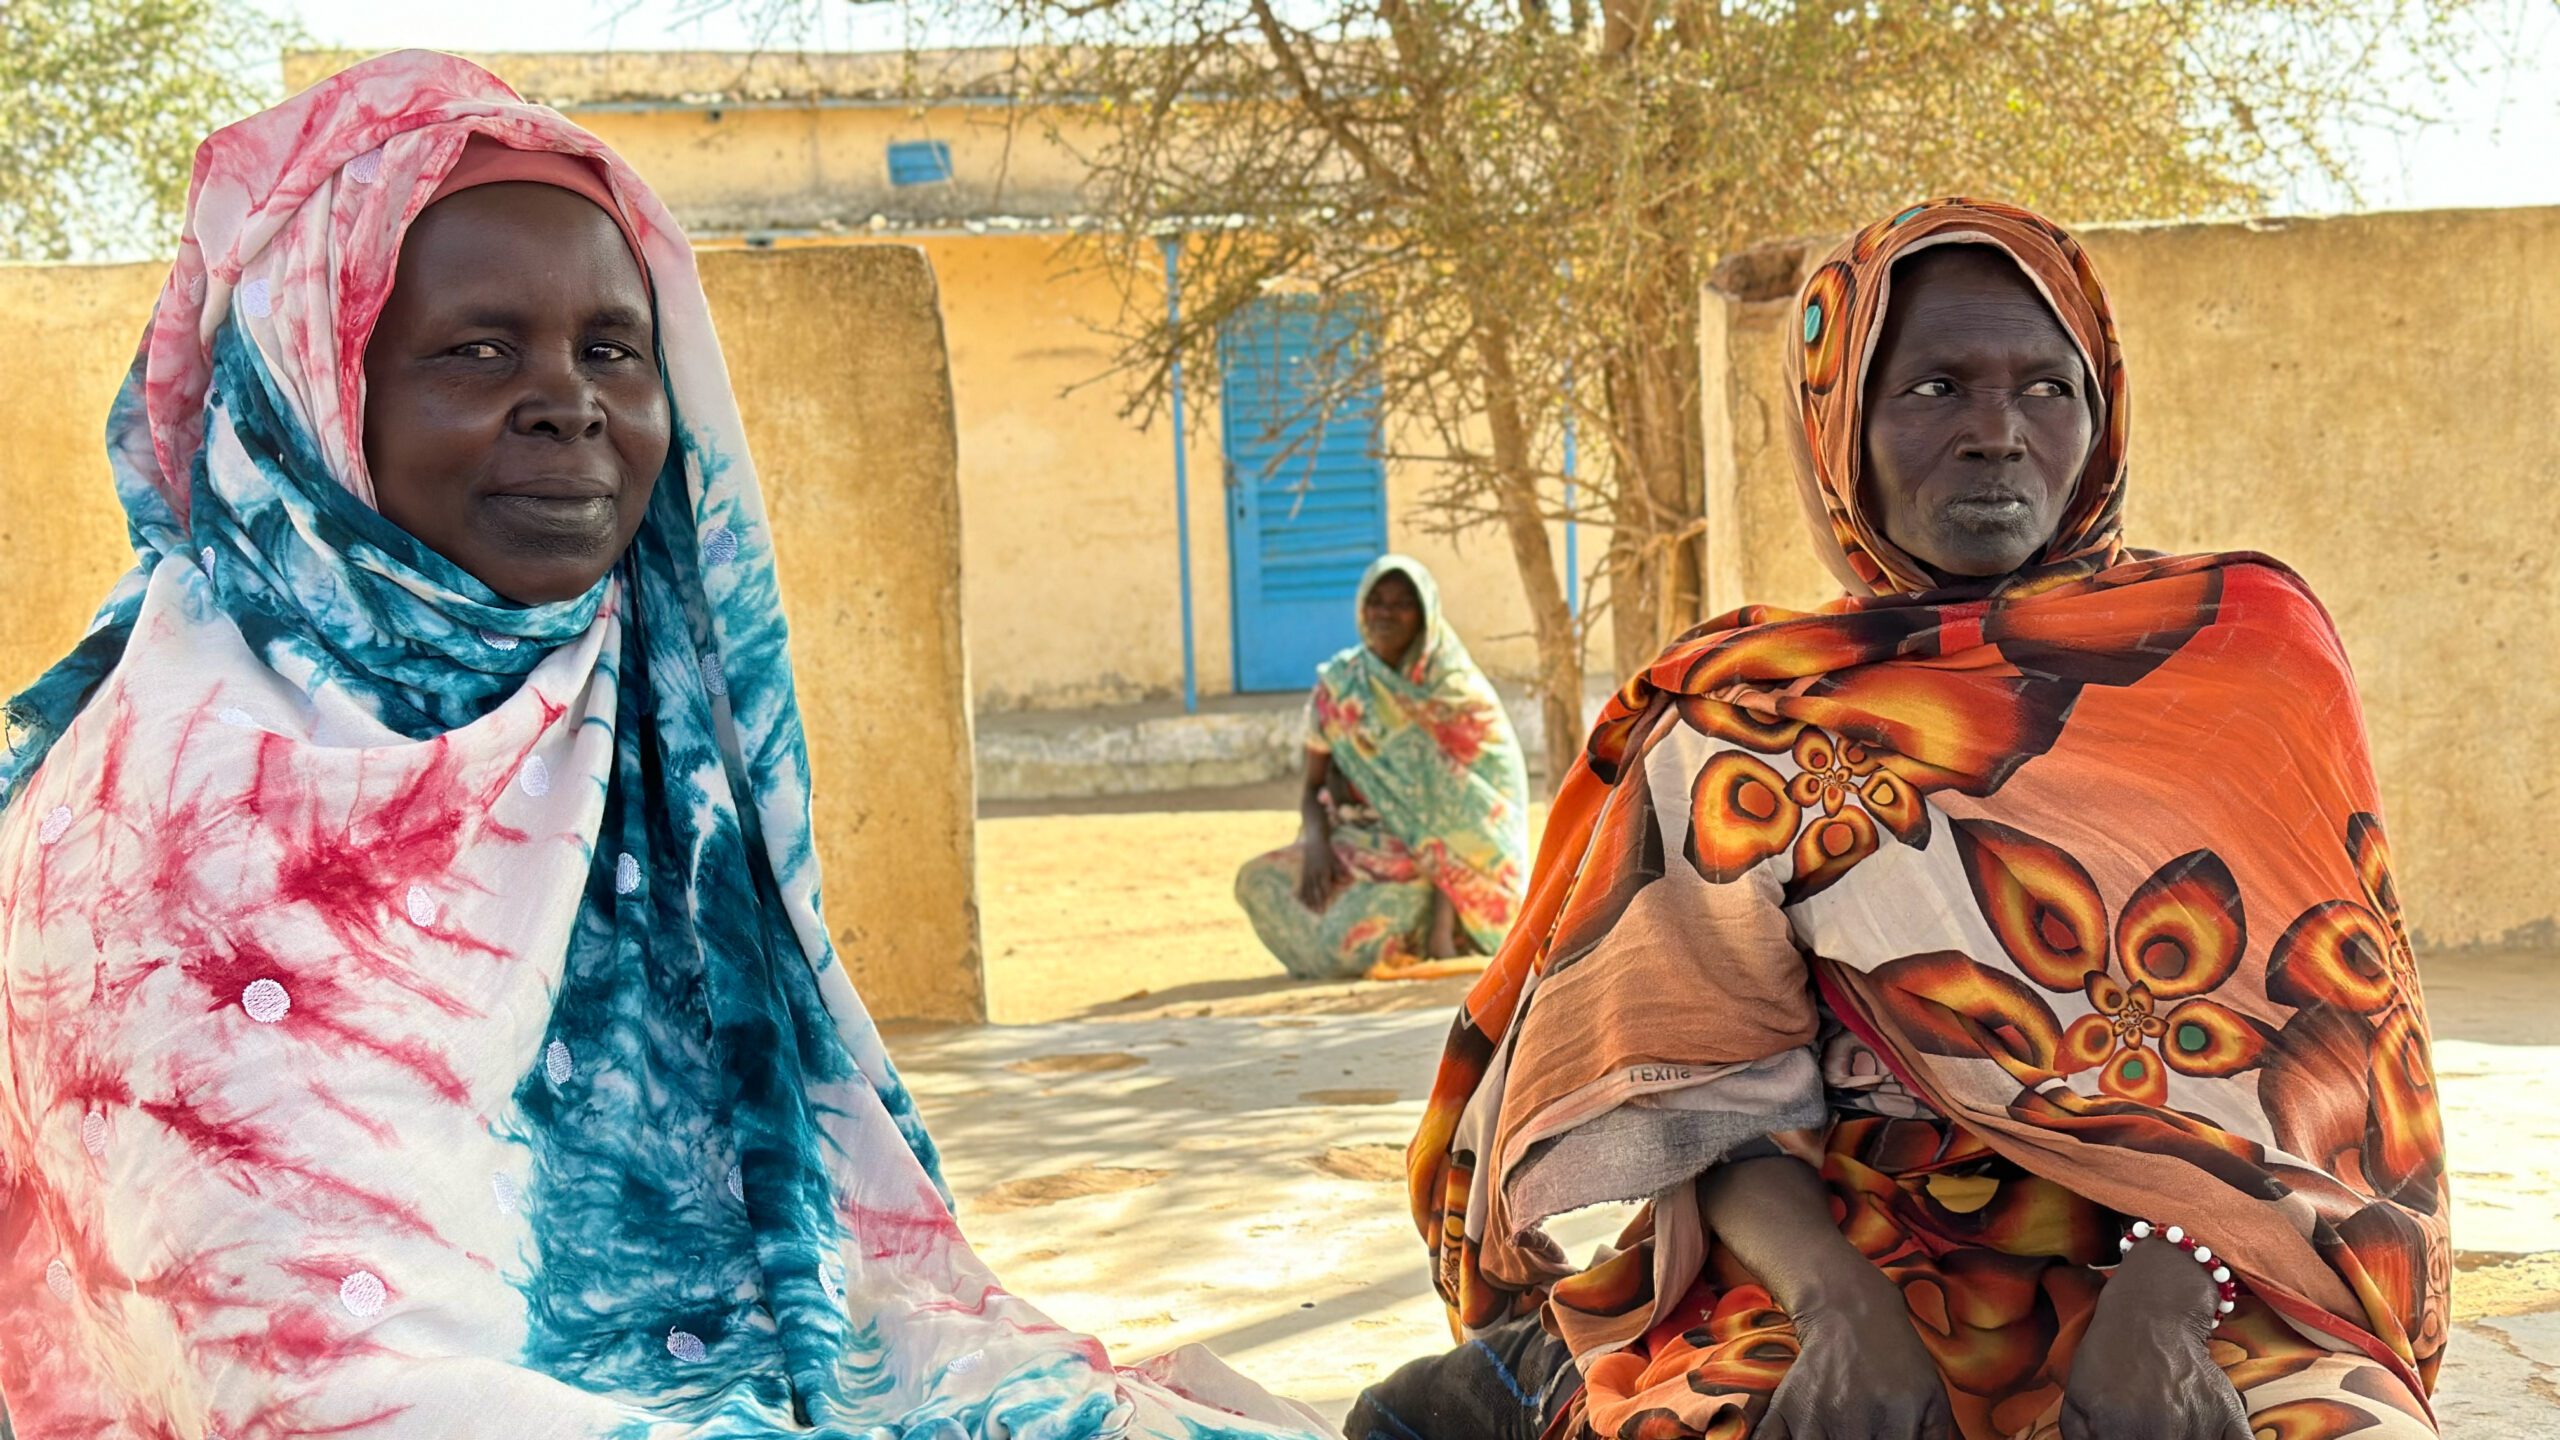 Clero judío: Hay que proteger a los civiles sudaneses